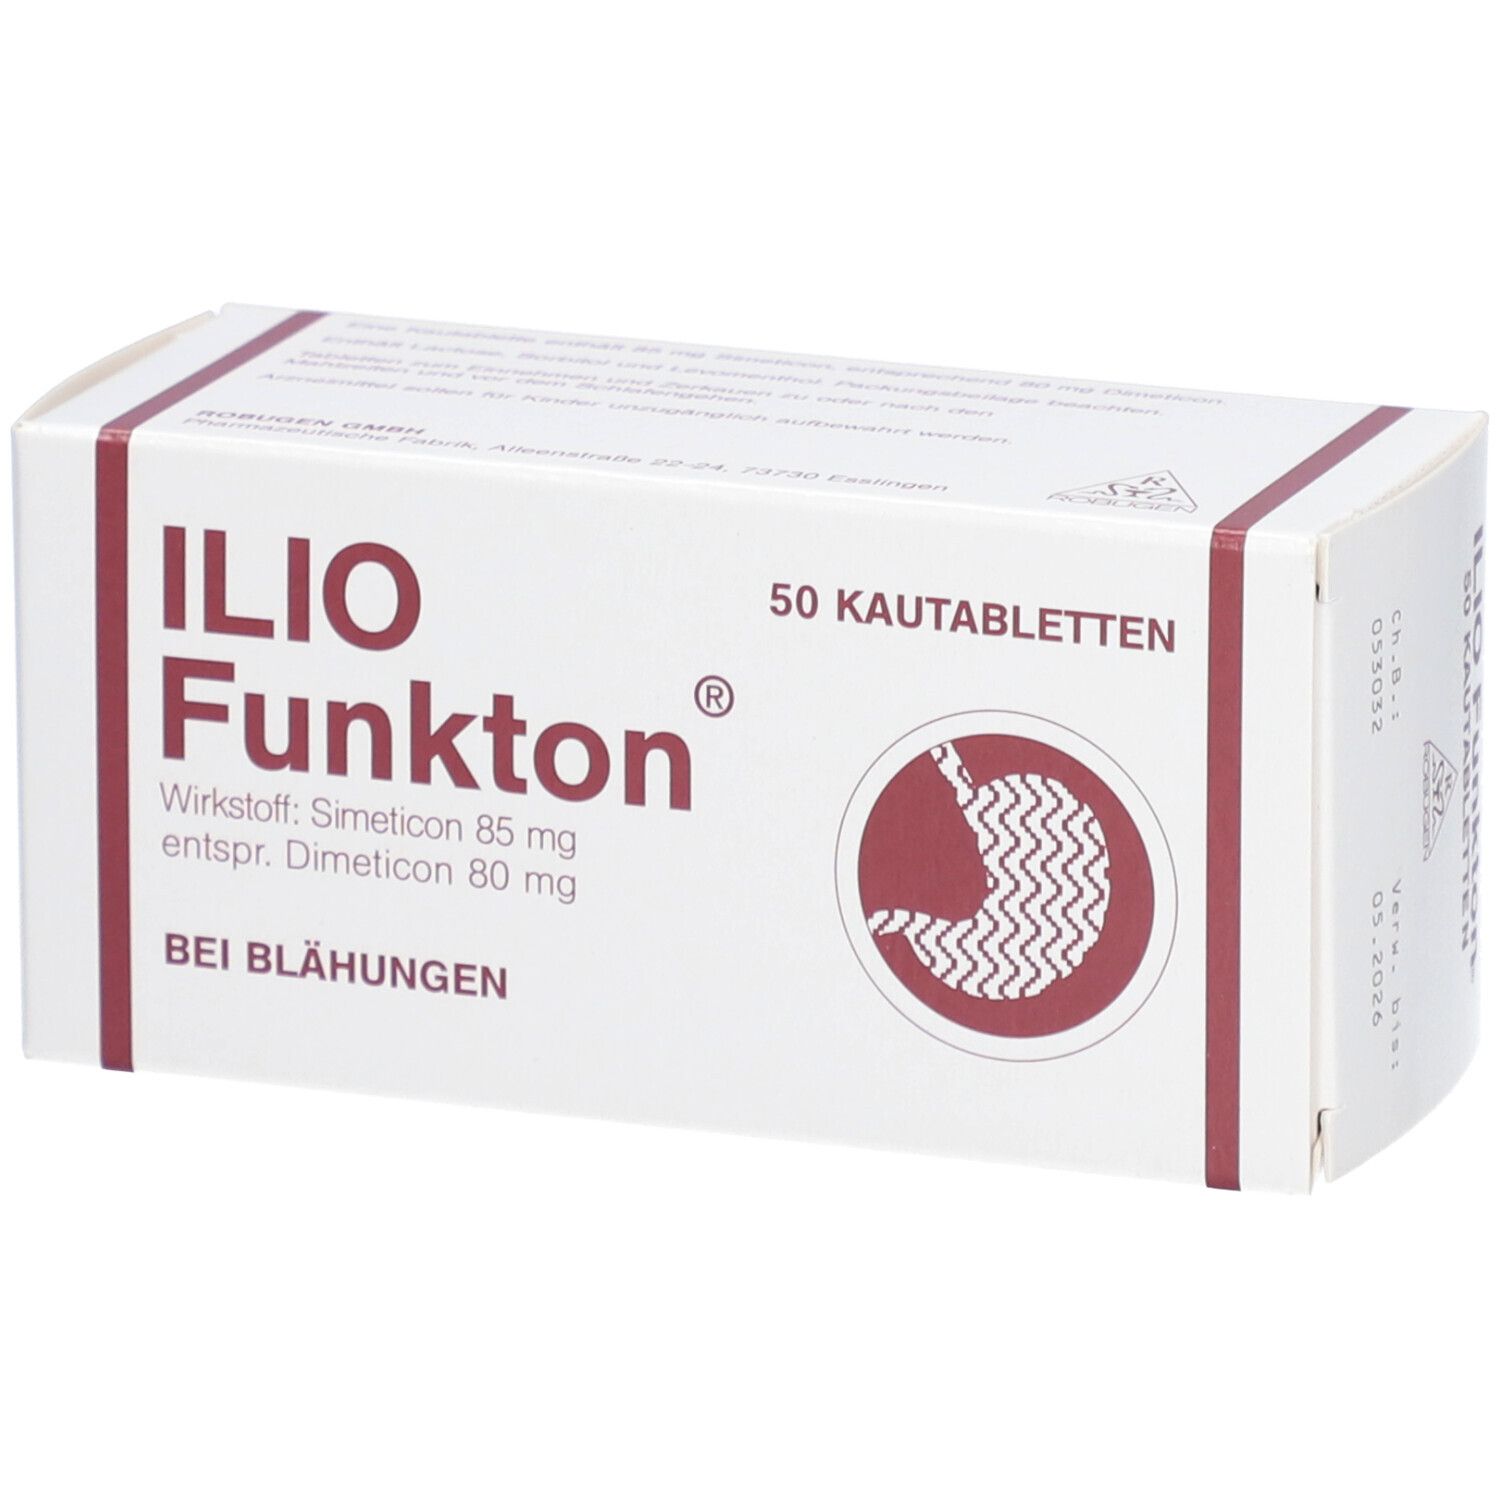 ILIO Funkton® Kautabletten